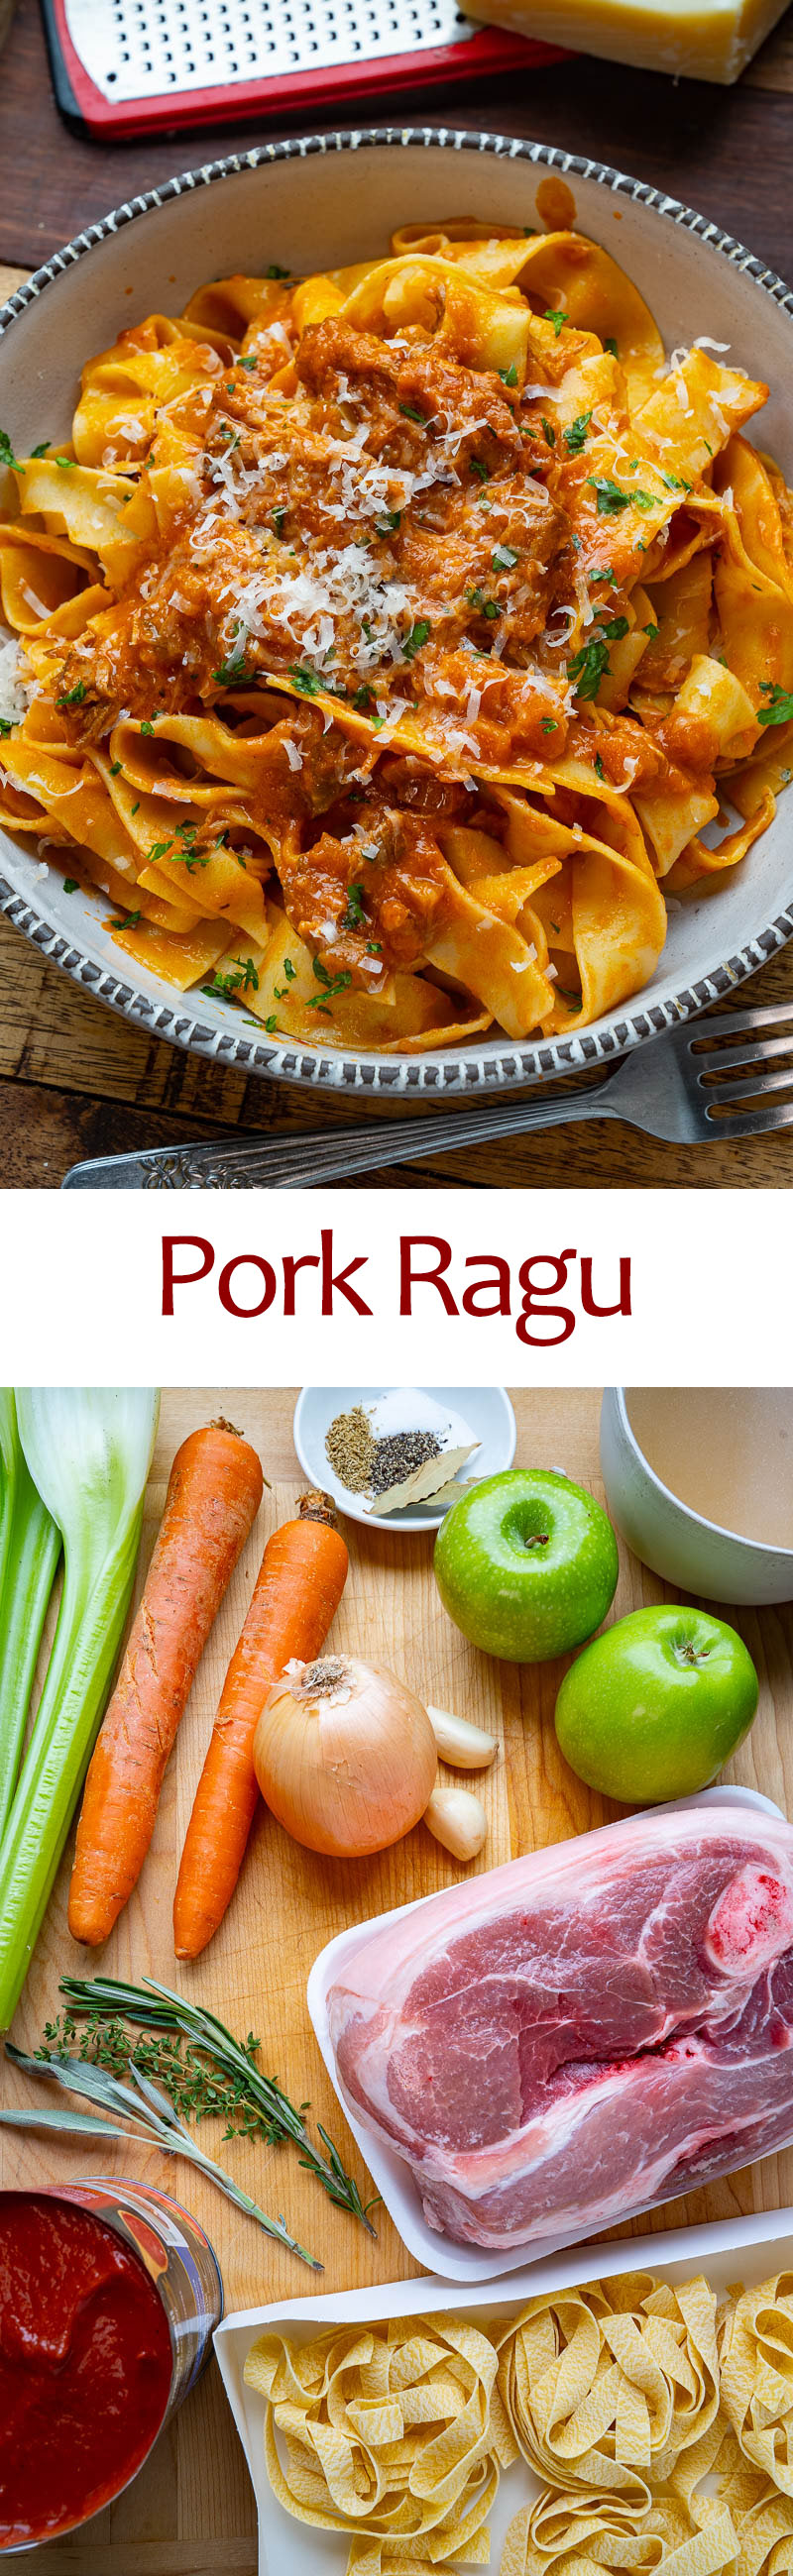 Pork Ragu